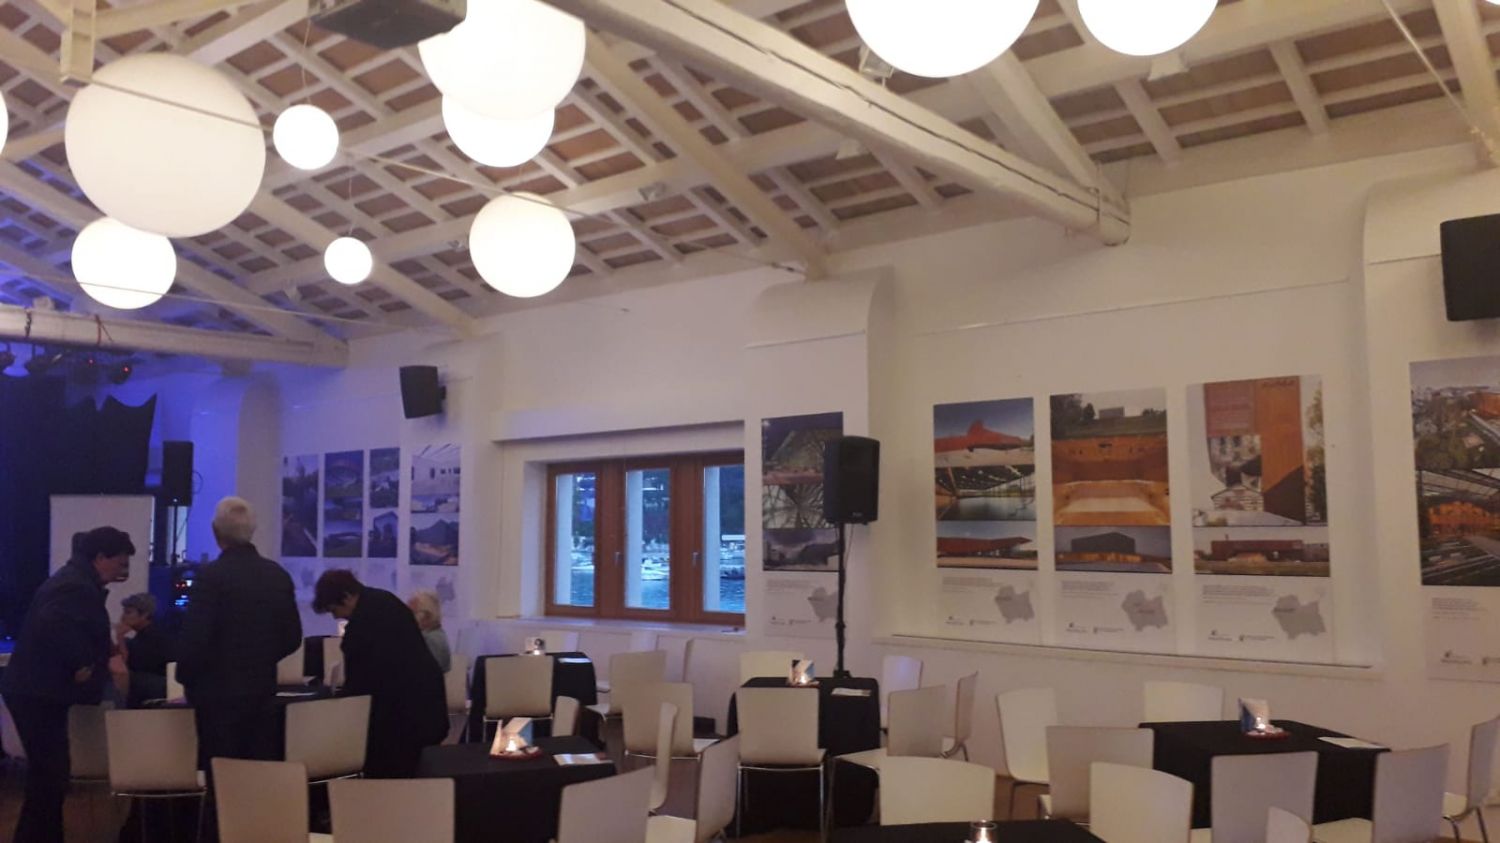 Na zdjęciu widać salę, na ścianach wiszą zdjęcia przedstawiające nowoczesne budynki z Małopolski, w sali znajdują sie stoliki z białymi krzesłami jak w restauracji, kilka osób stoi w rogu sali i dyskutuje.